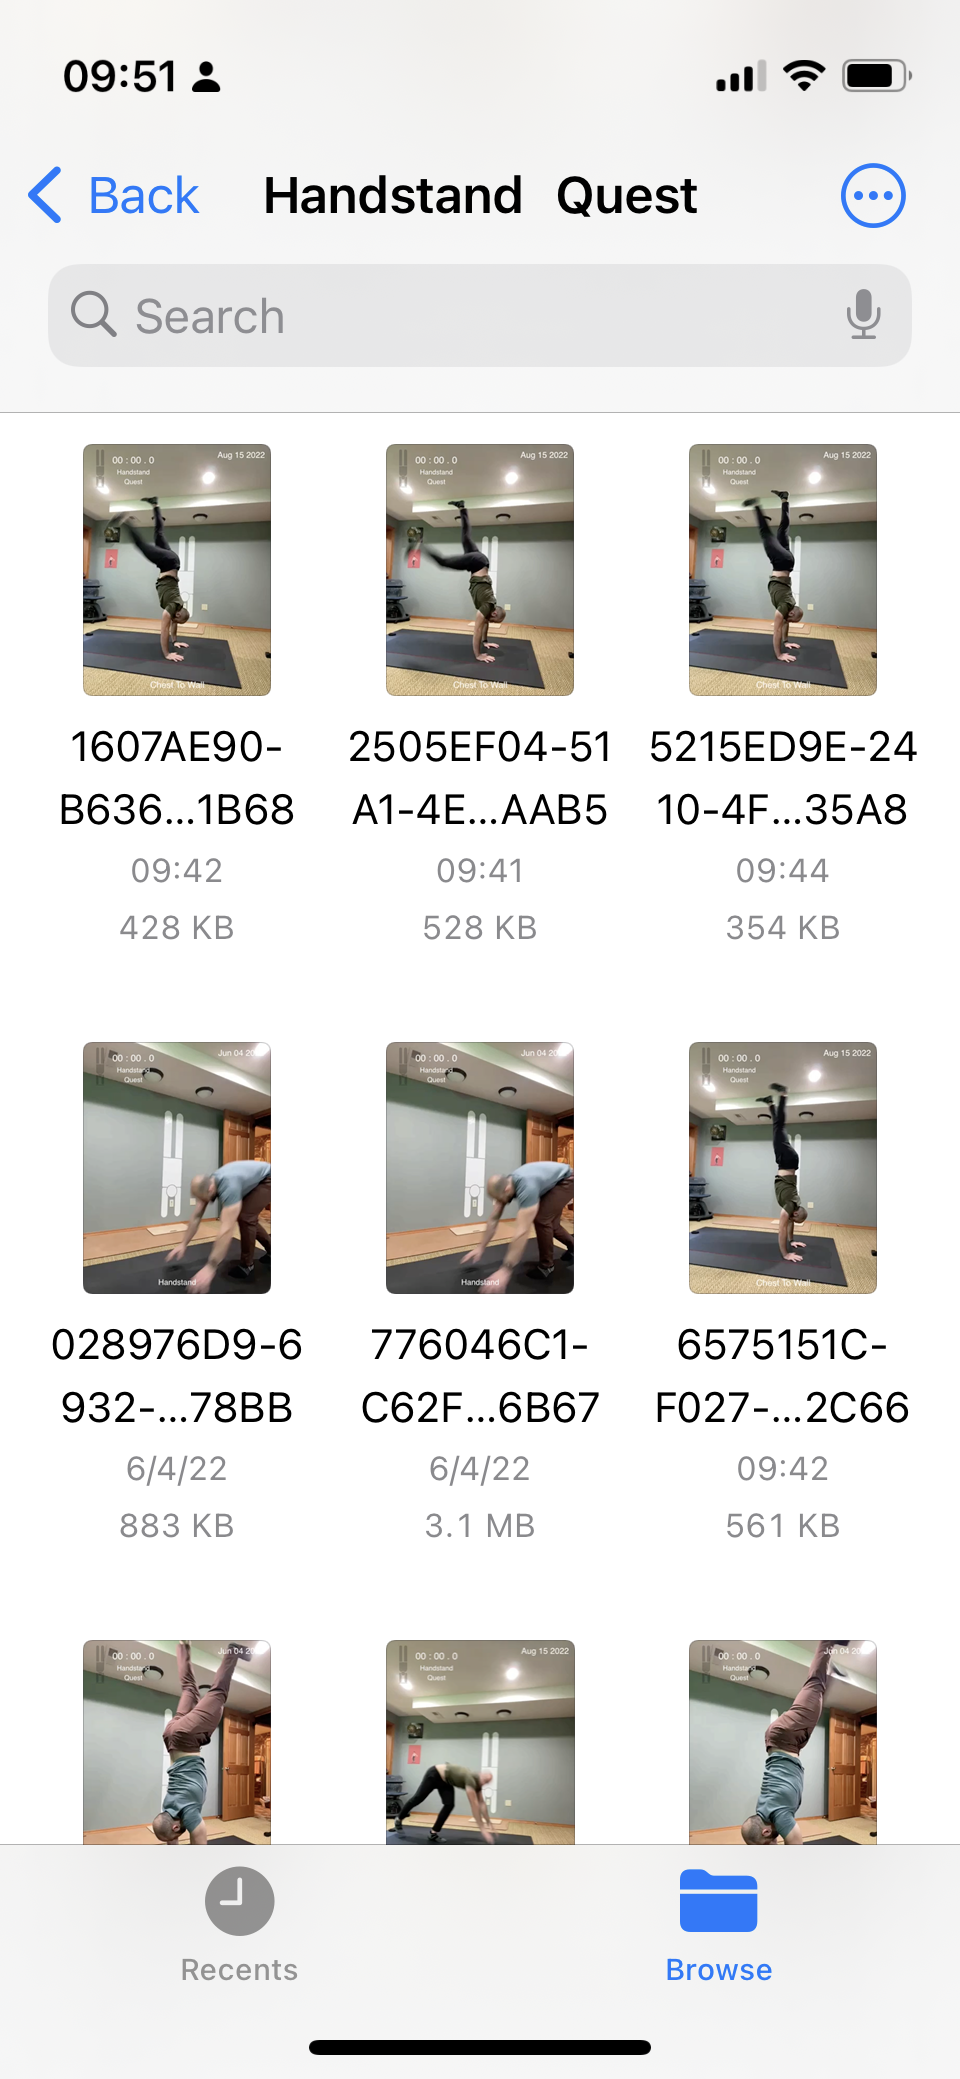 Handstand Quest Videos in Files App